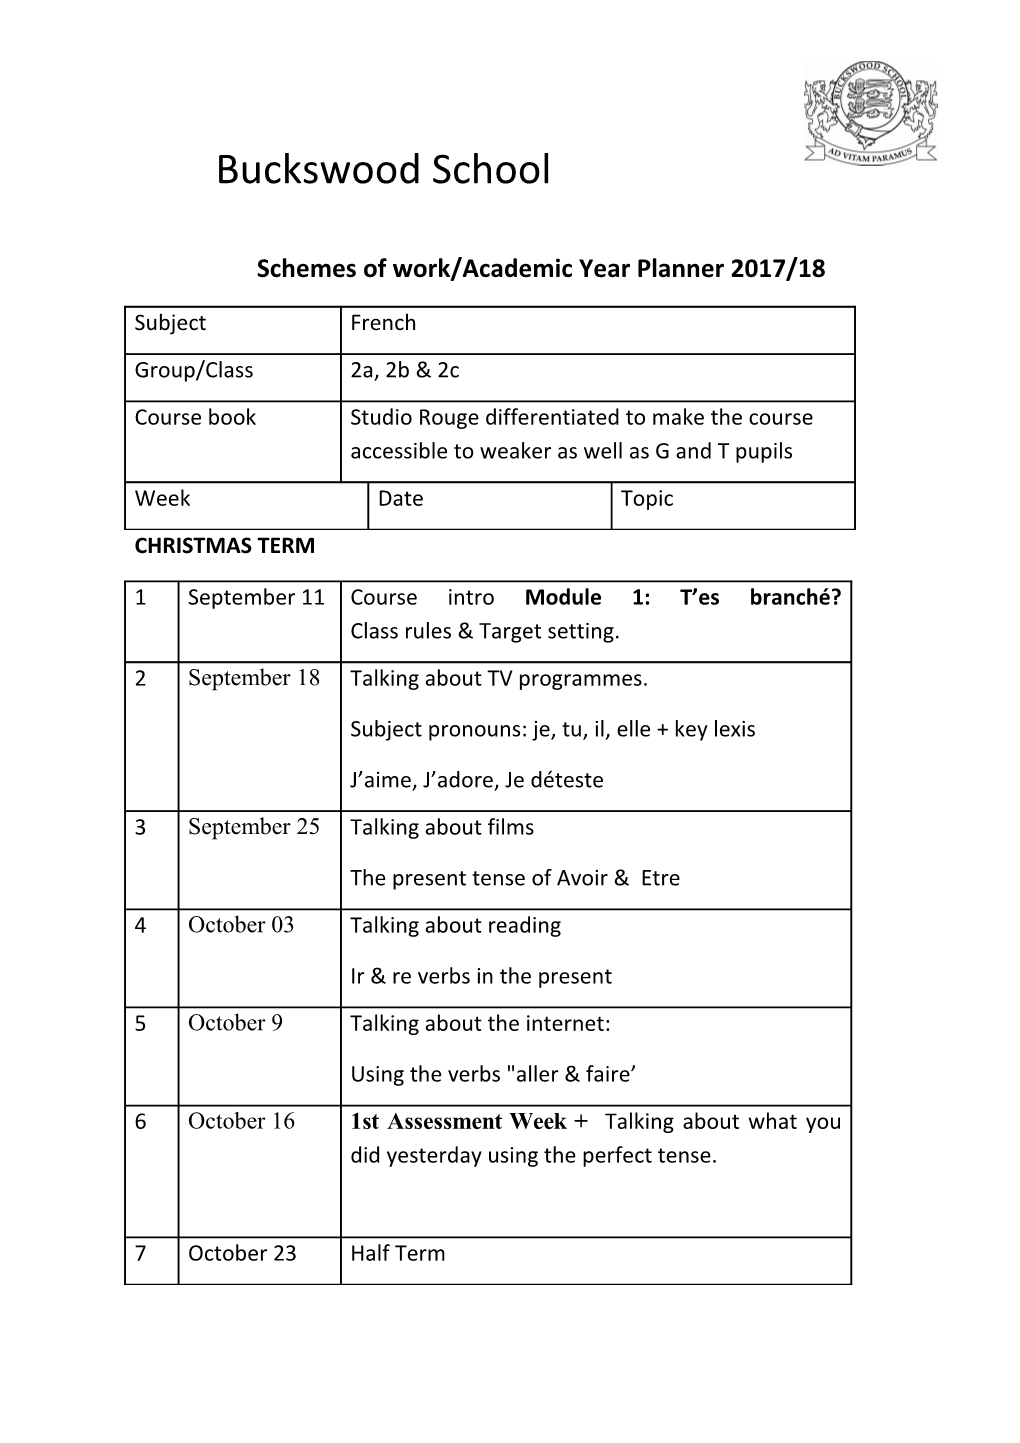 Schemes of Work/Academic Year Planner 2017/18